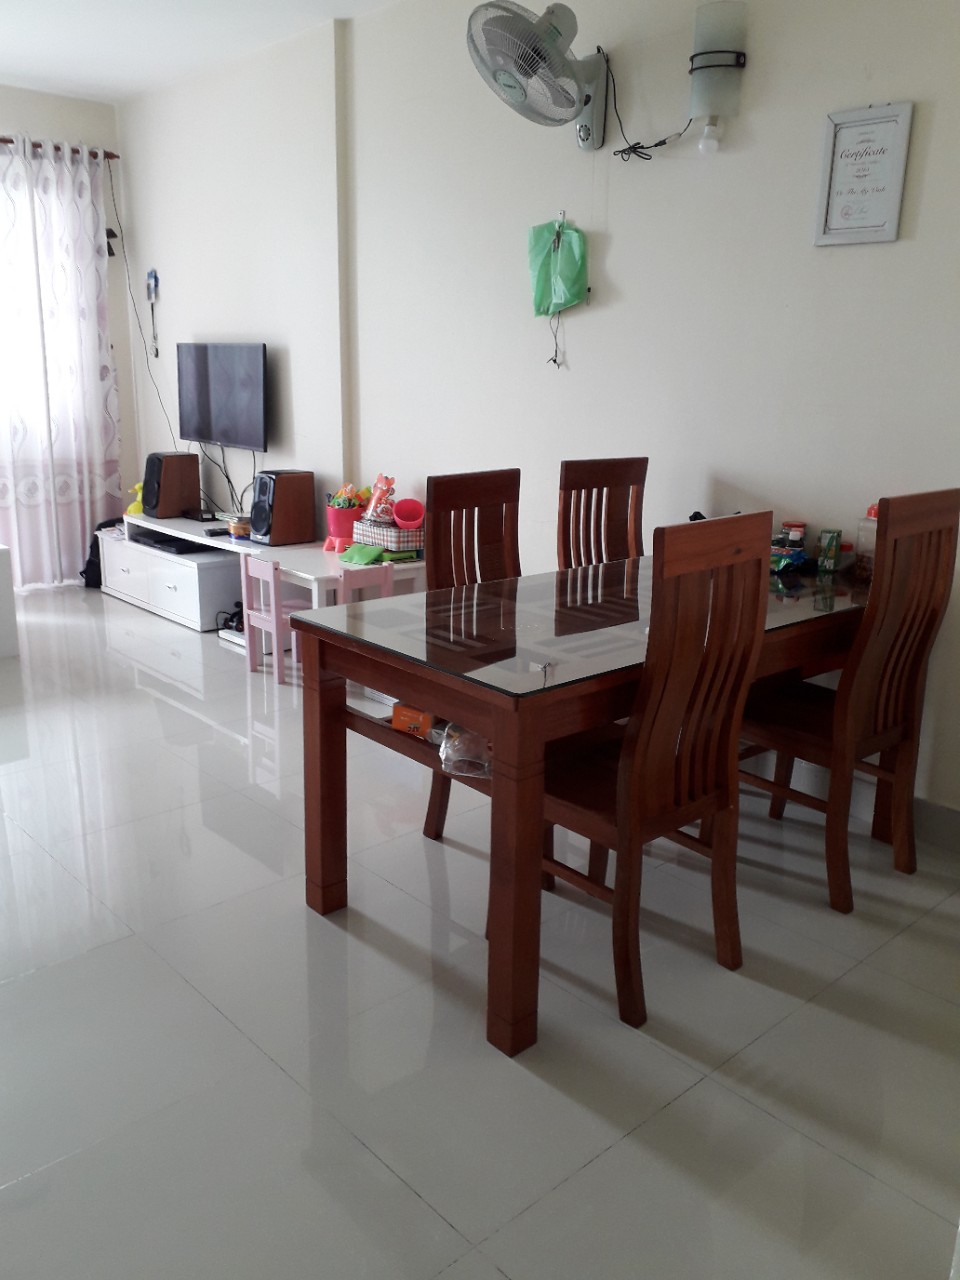 Cần cho thuê căn hộ 2PN Thủ Thiêm Xanh, giá từ 6tr/tháng 60m2. LH 0903 824249